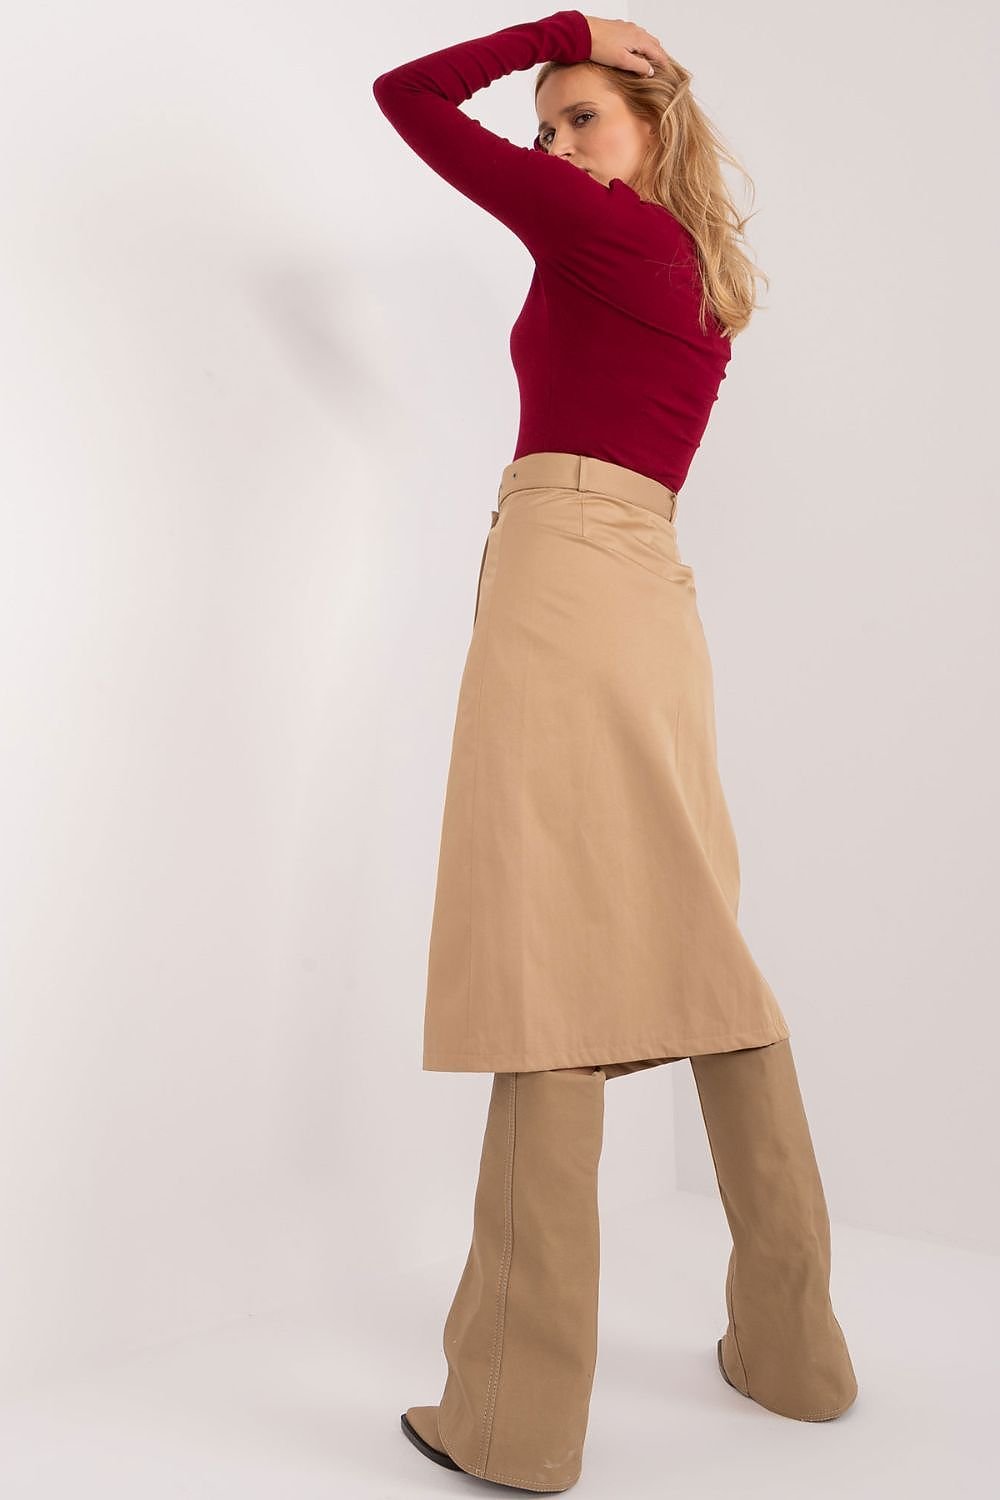 Skirt model 193268 Factory Price